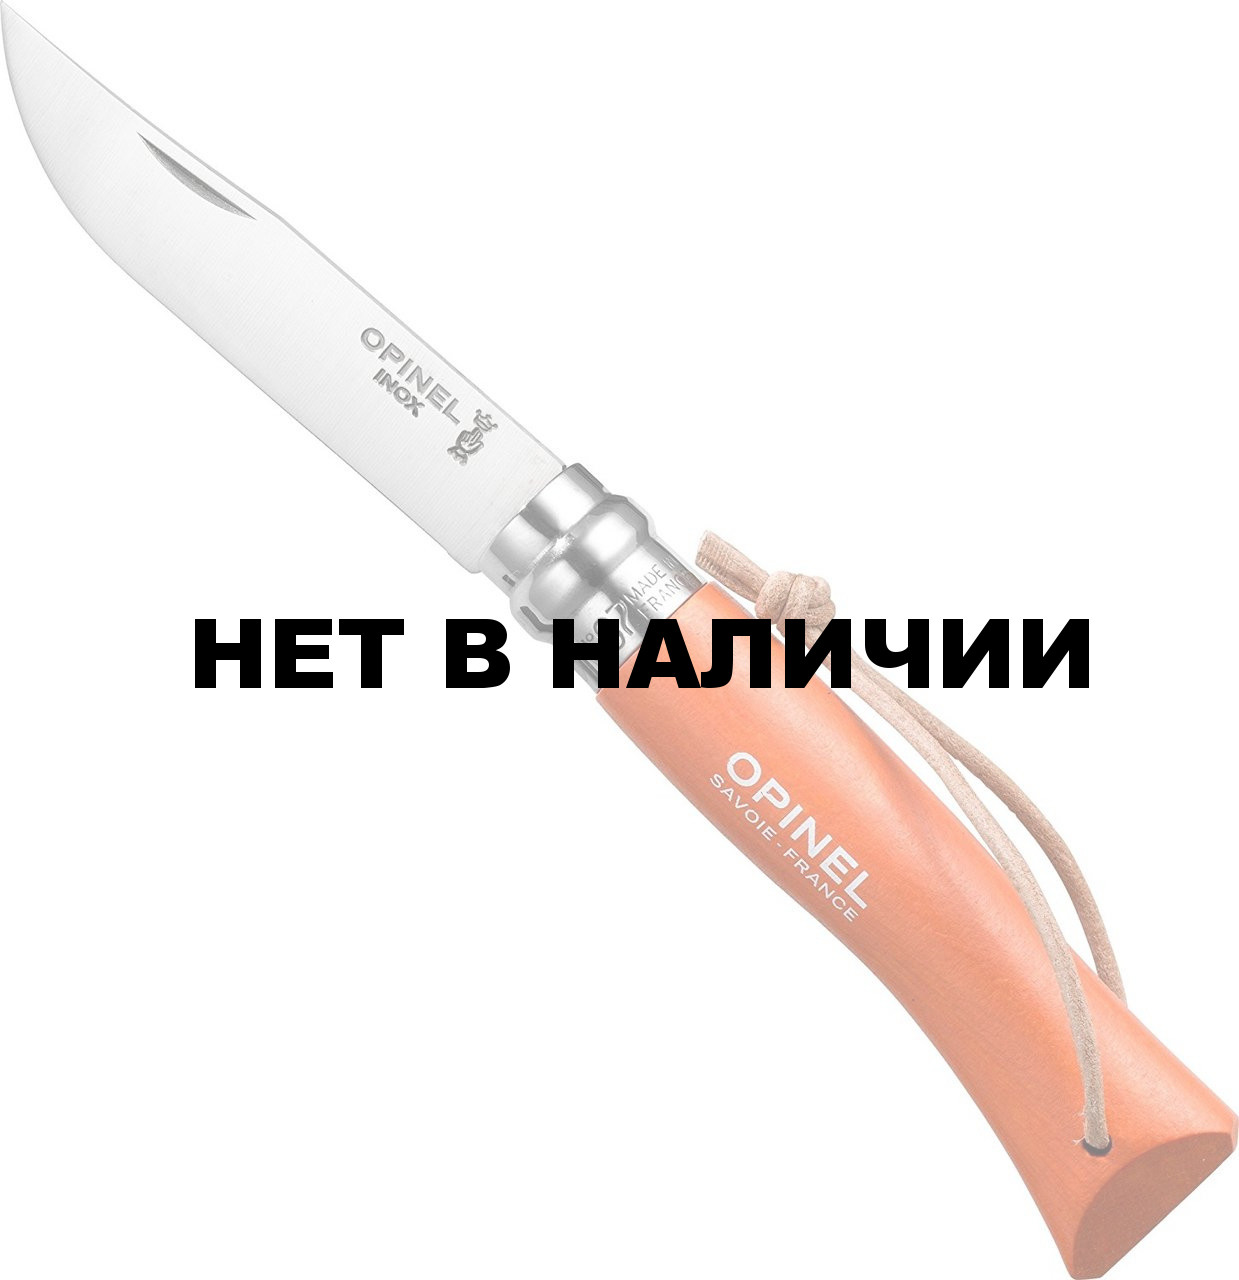 Изготовление ножен производится в мастерской в Санкт-Петербурге.